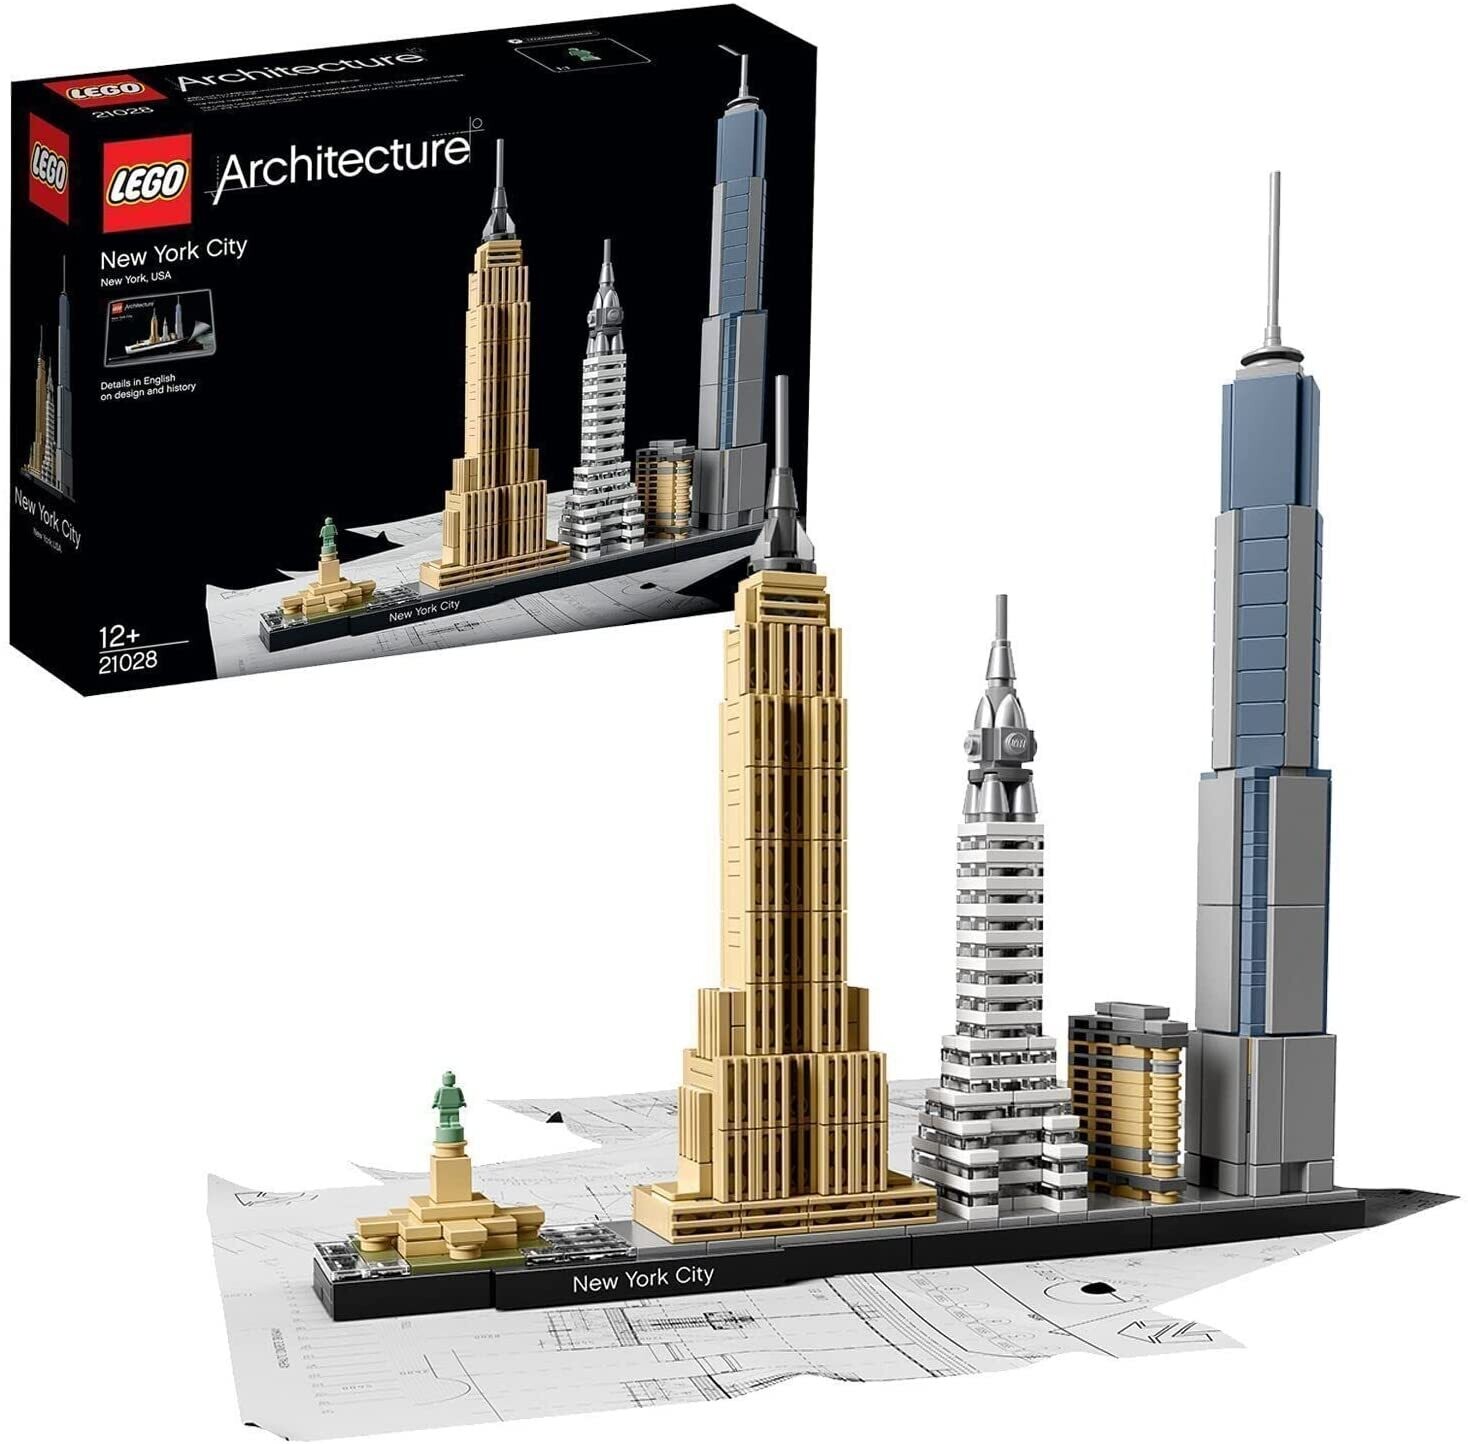 LEGO ARCHITETTURA 21028 NEW YORK CITY